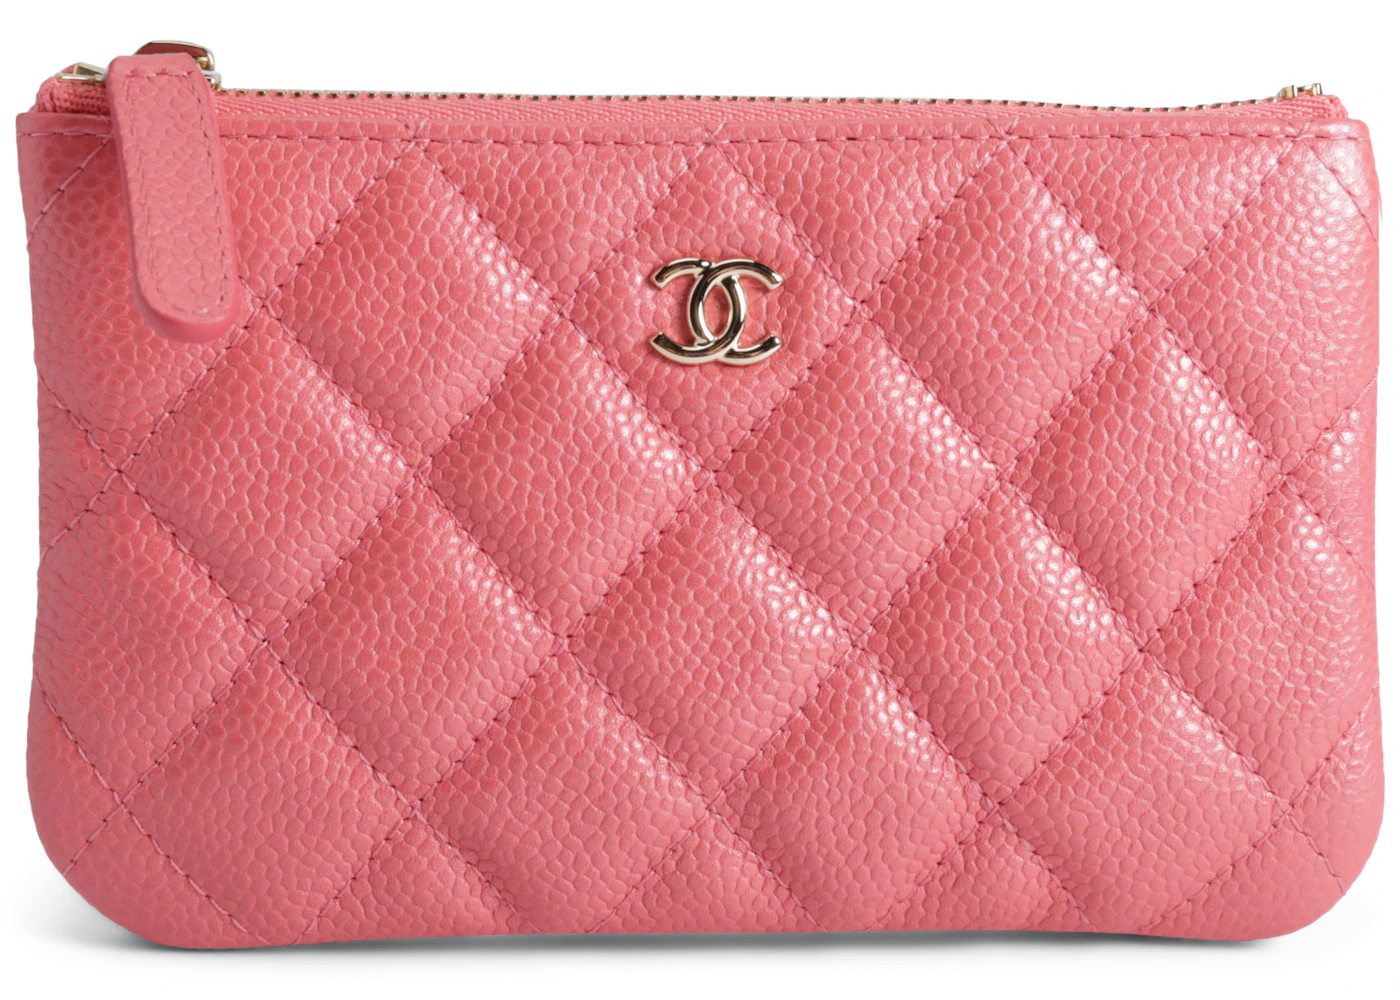 New w Tags Chanel 19 WOC Pink Denim Fabric/Leather Clutch Mini O-Bag